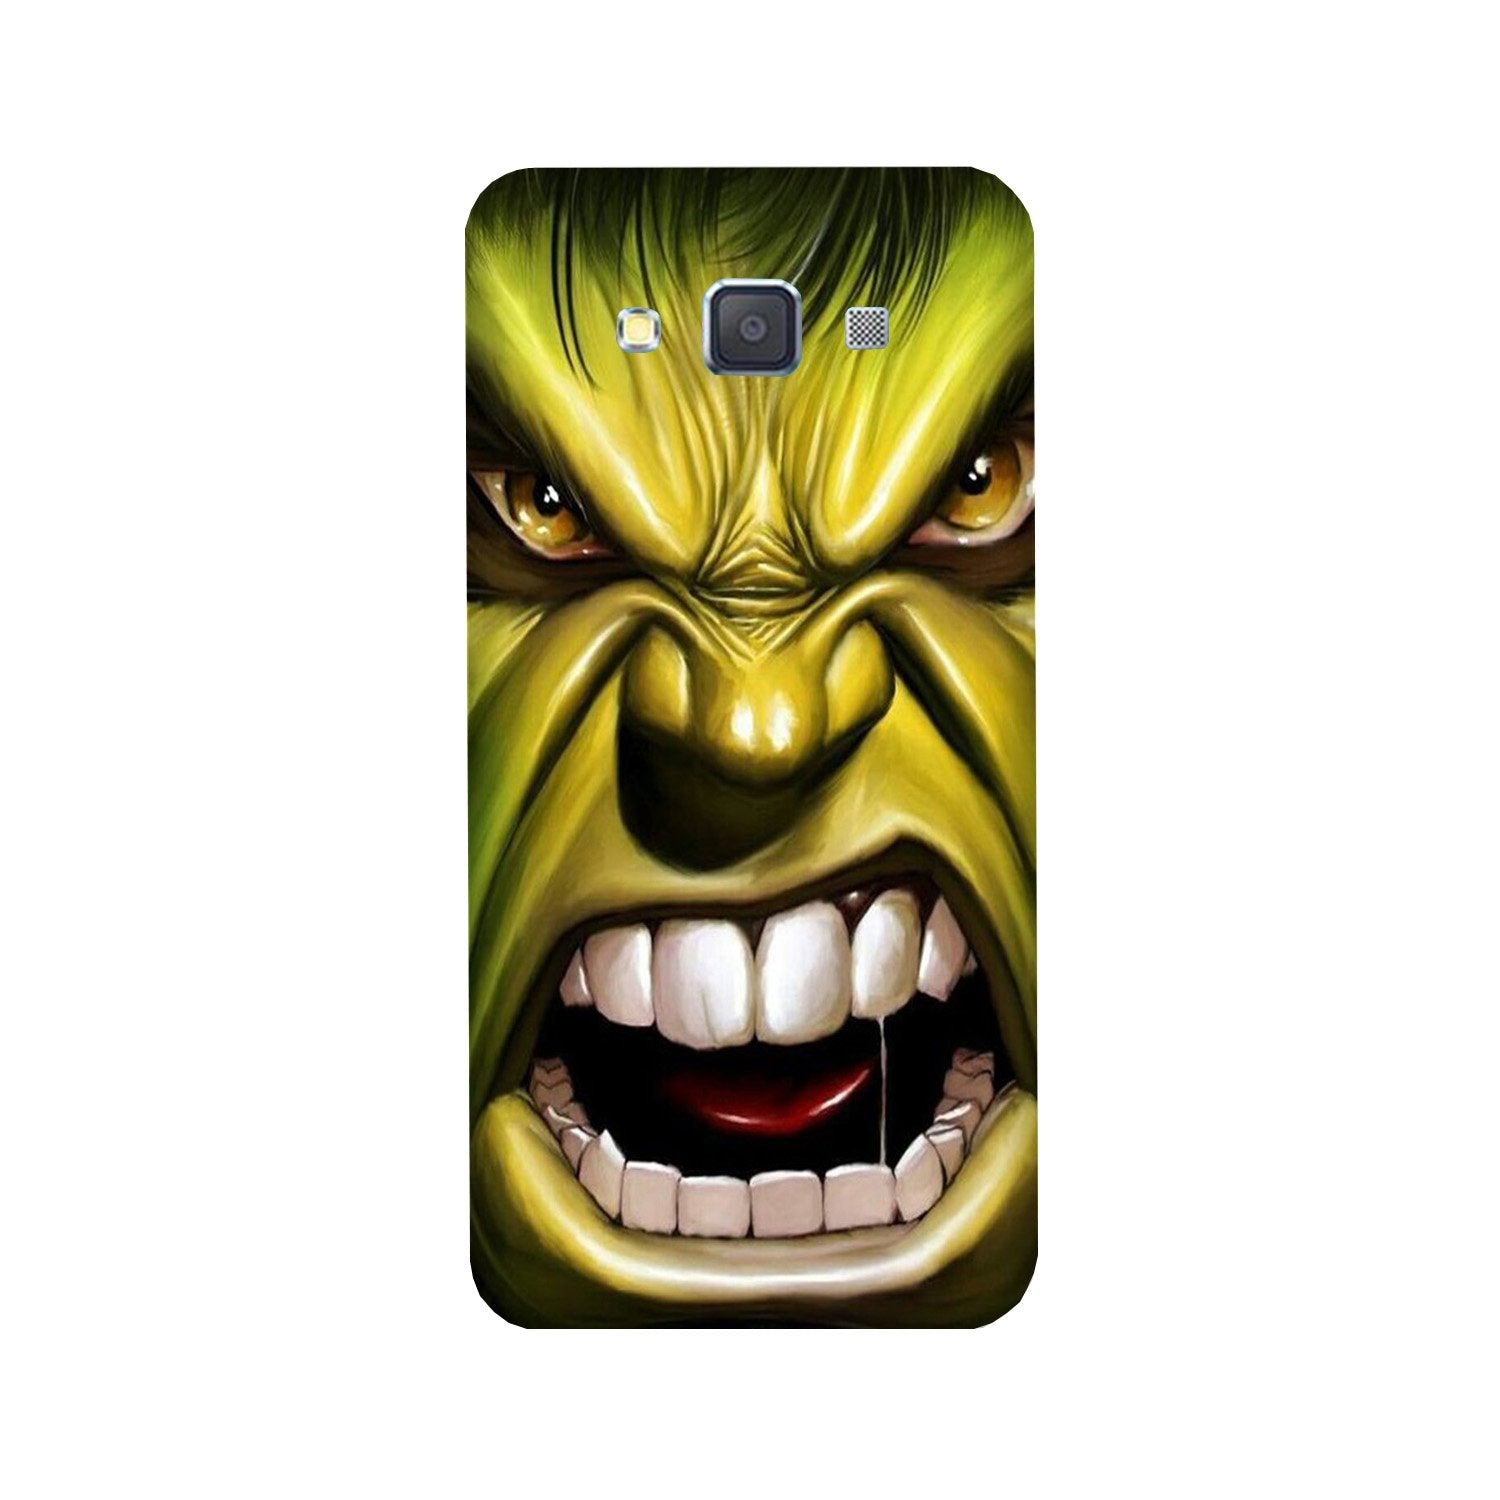 Hulk Superhero Case for Galaxy E7(Design - 121)